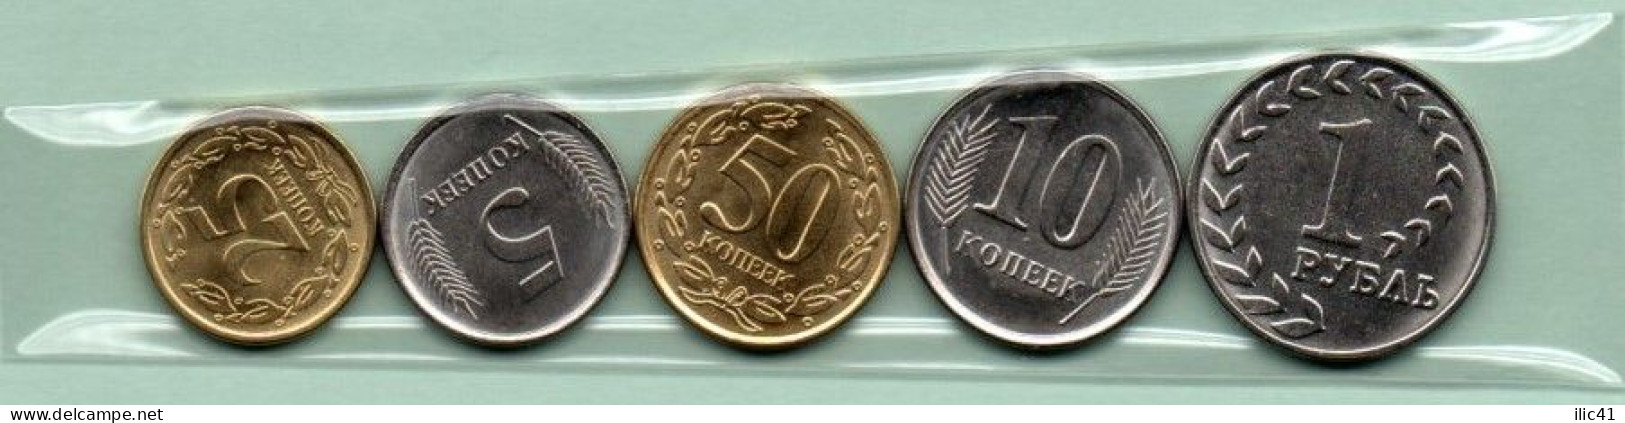 Moldova Moldova Transnistria 2020  Coins  "Change Coins Of Transnistria" UNC - Moldova